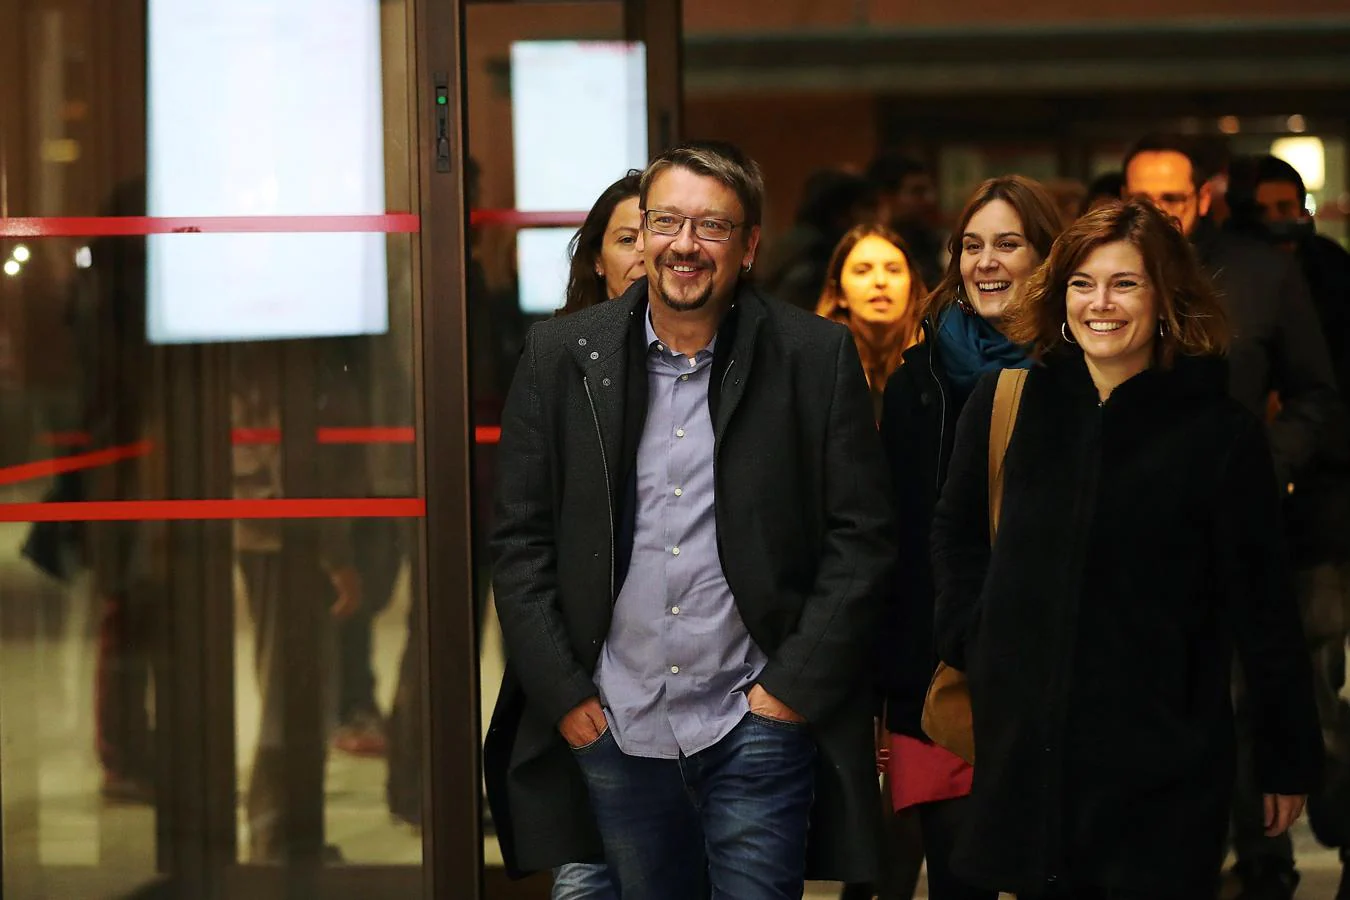 Llegada del candidato de Xavier Domenech, candidato de Cataluña en Comu Podem, al campus universitario de la UPF en Ciutadella. 